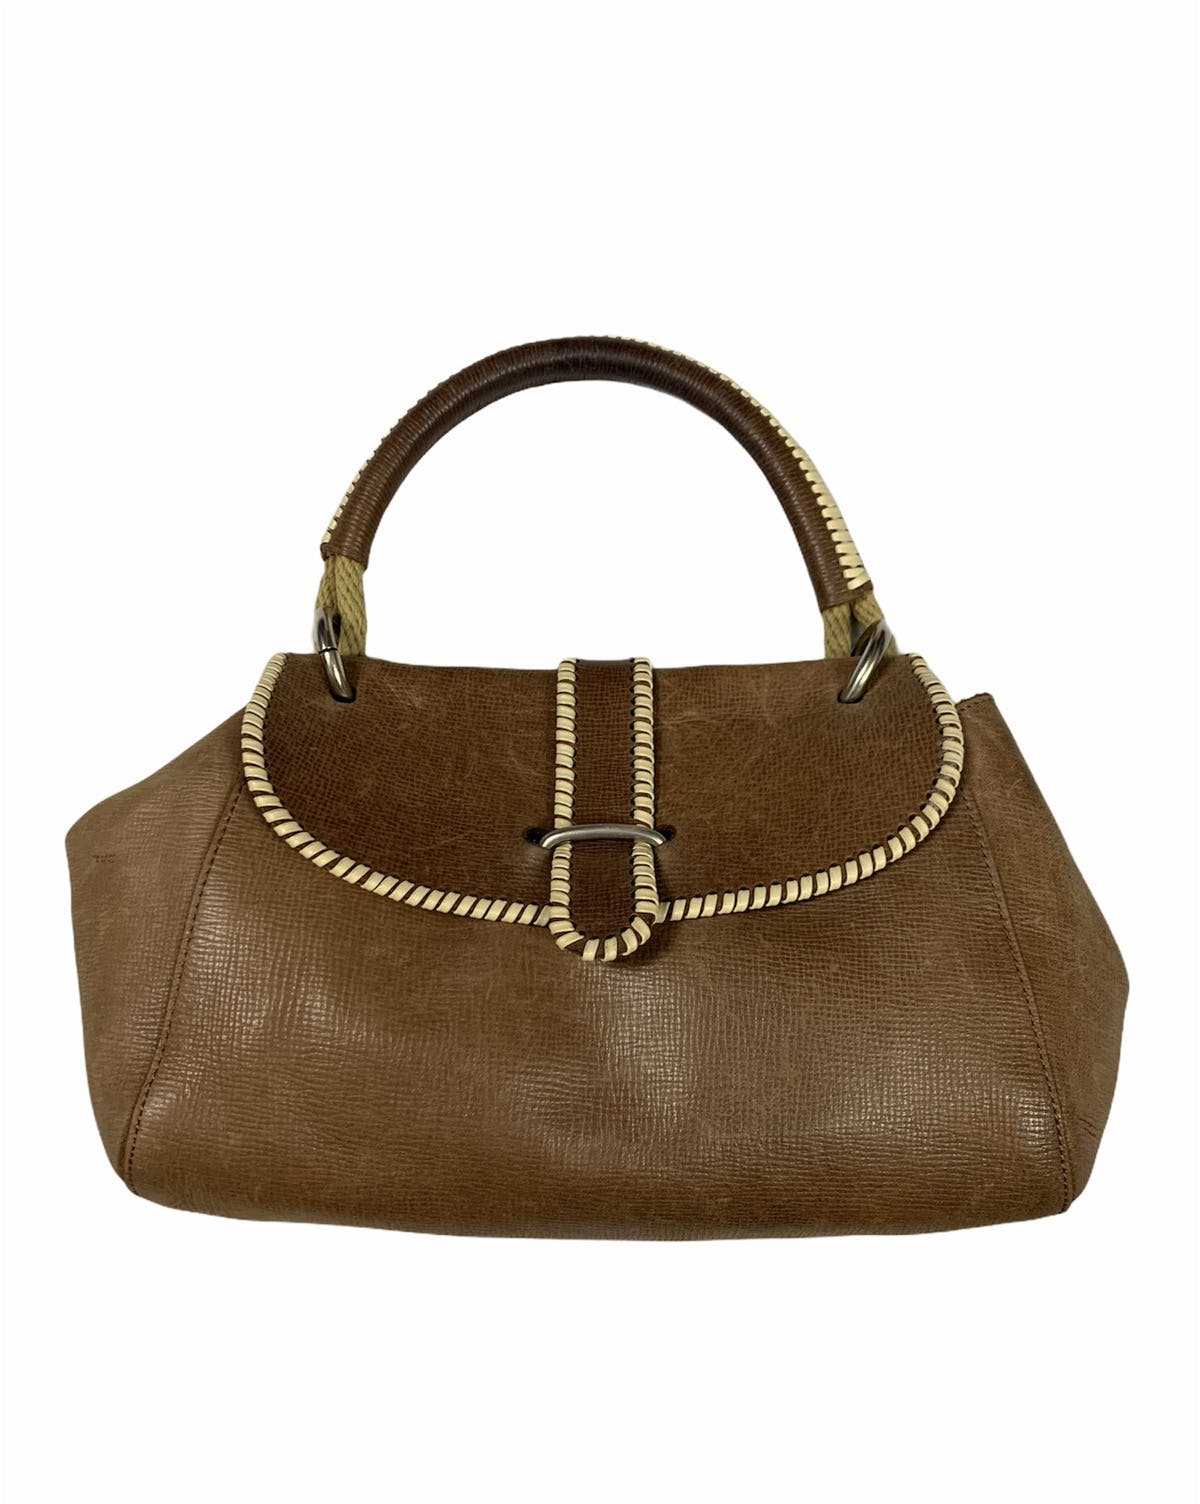 Marni leather handbag - 1